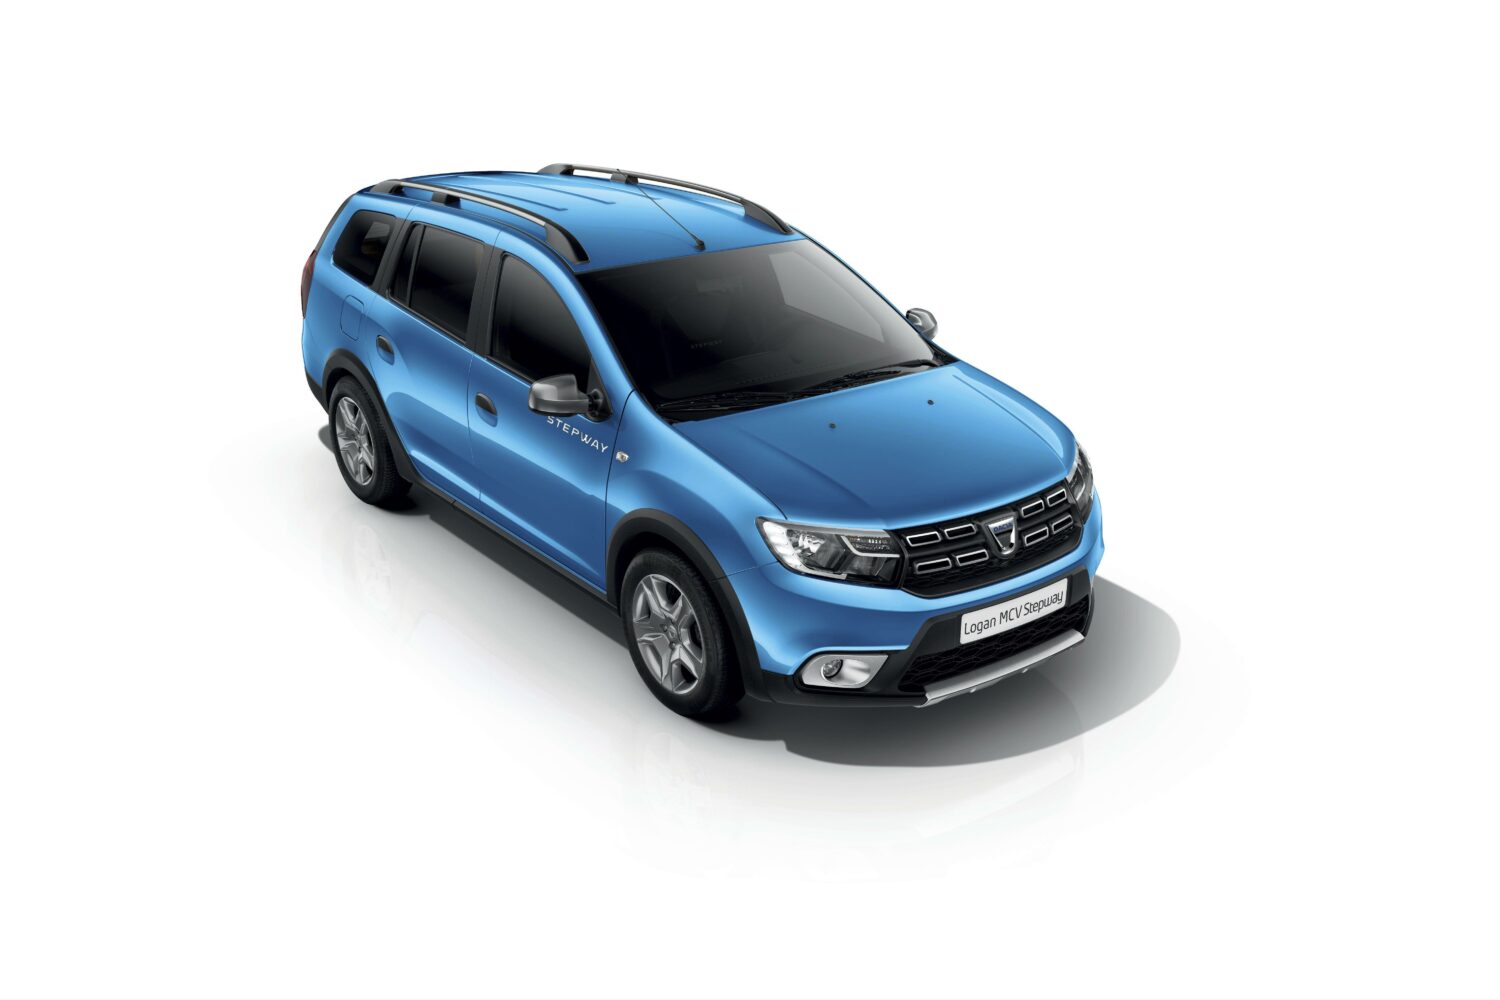 2017 - Dacia LOGAN MCV STEPWAY.jpg